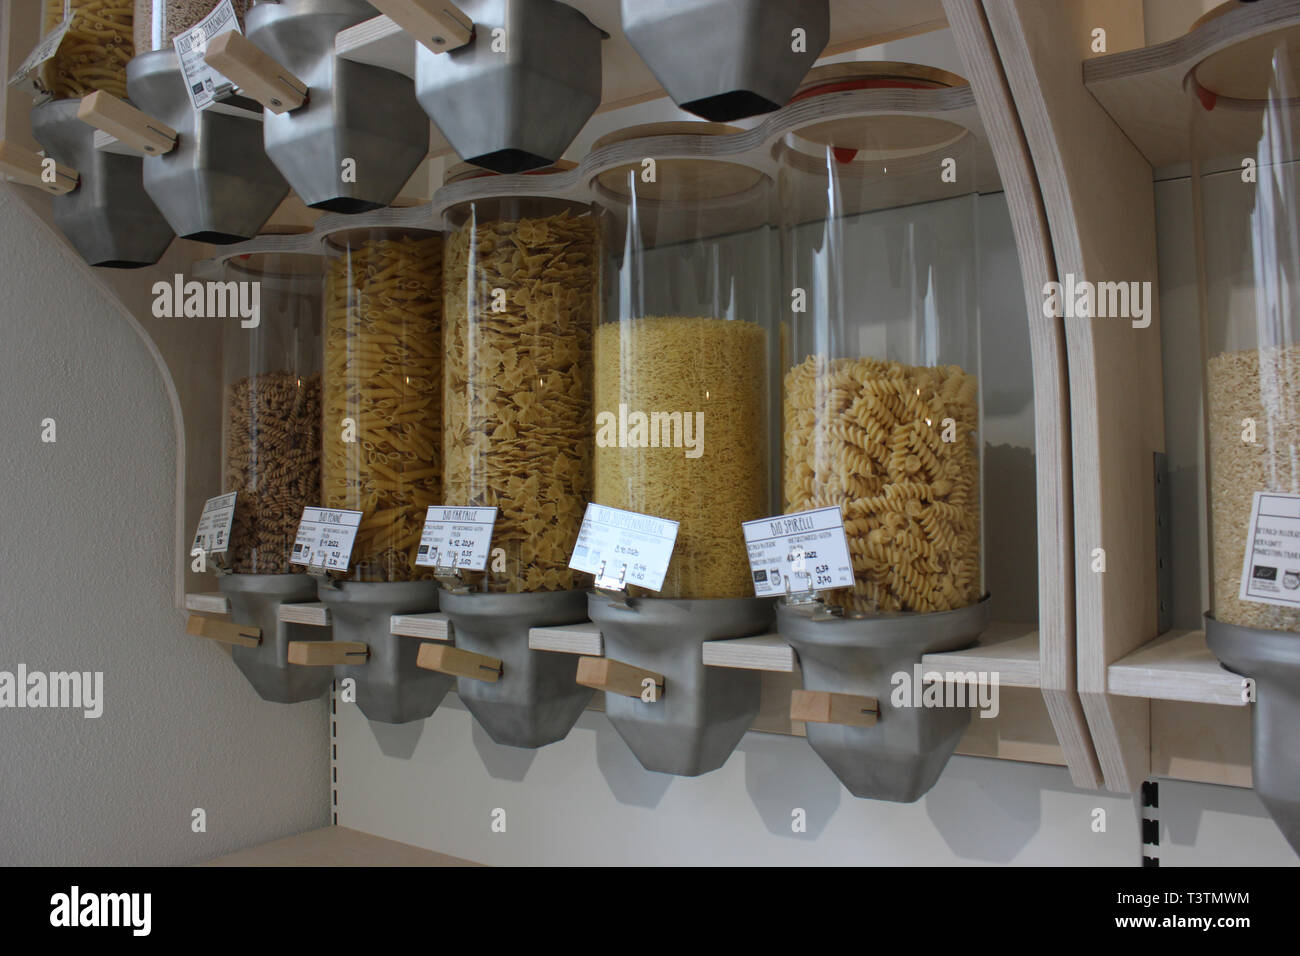 Pasta verkauft, ohne Verpackung, in Null Abfall Weise in Glasbehältern vorgestellt. Stockfoto